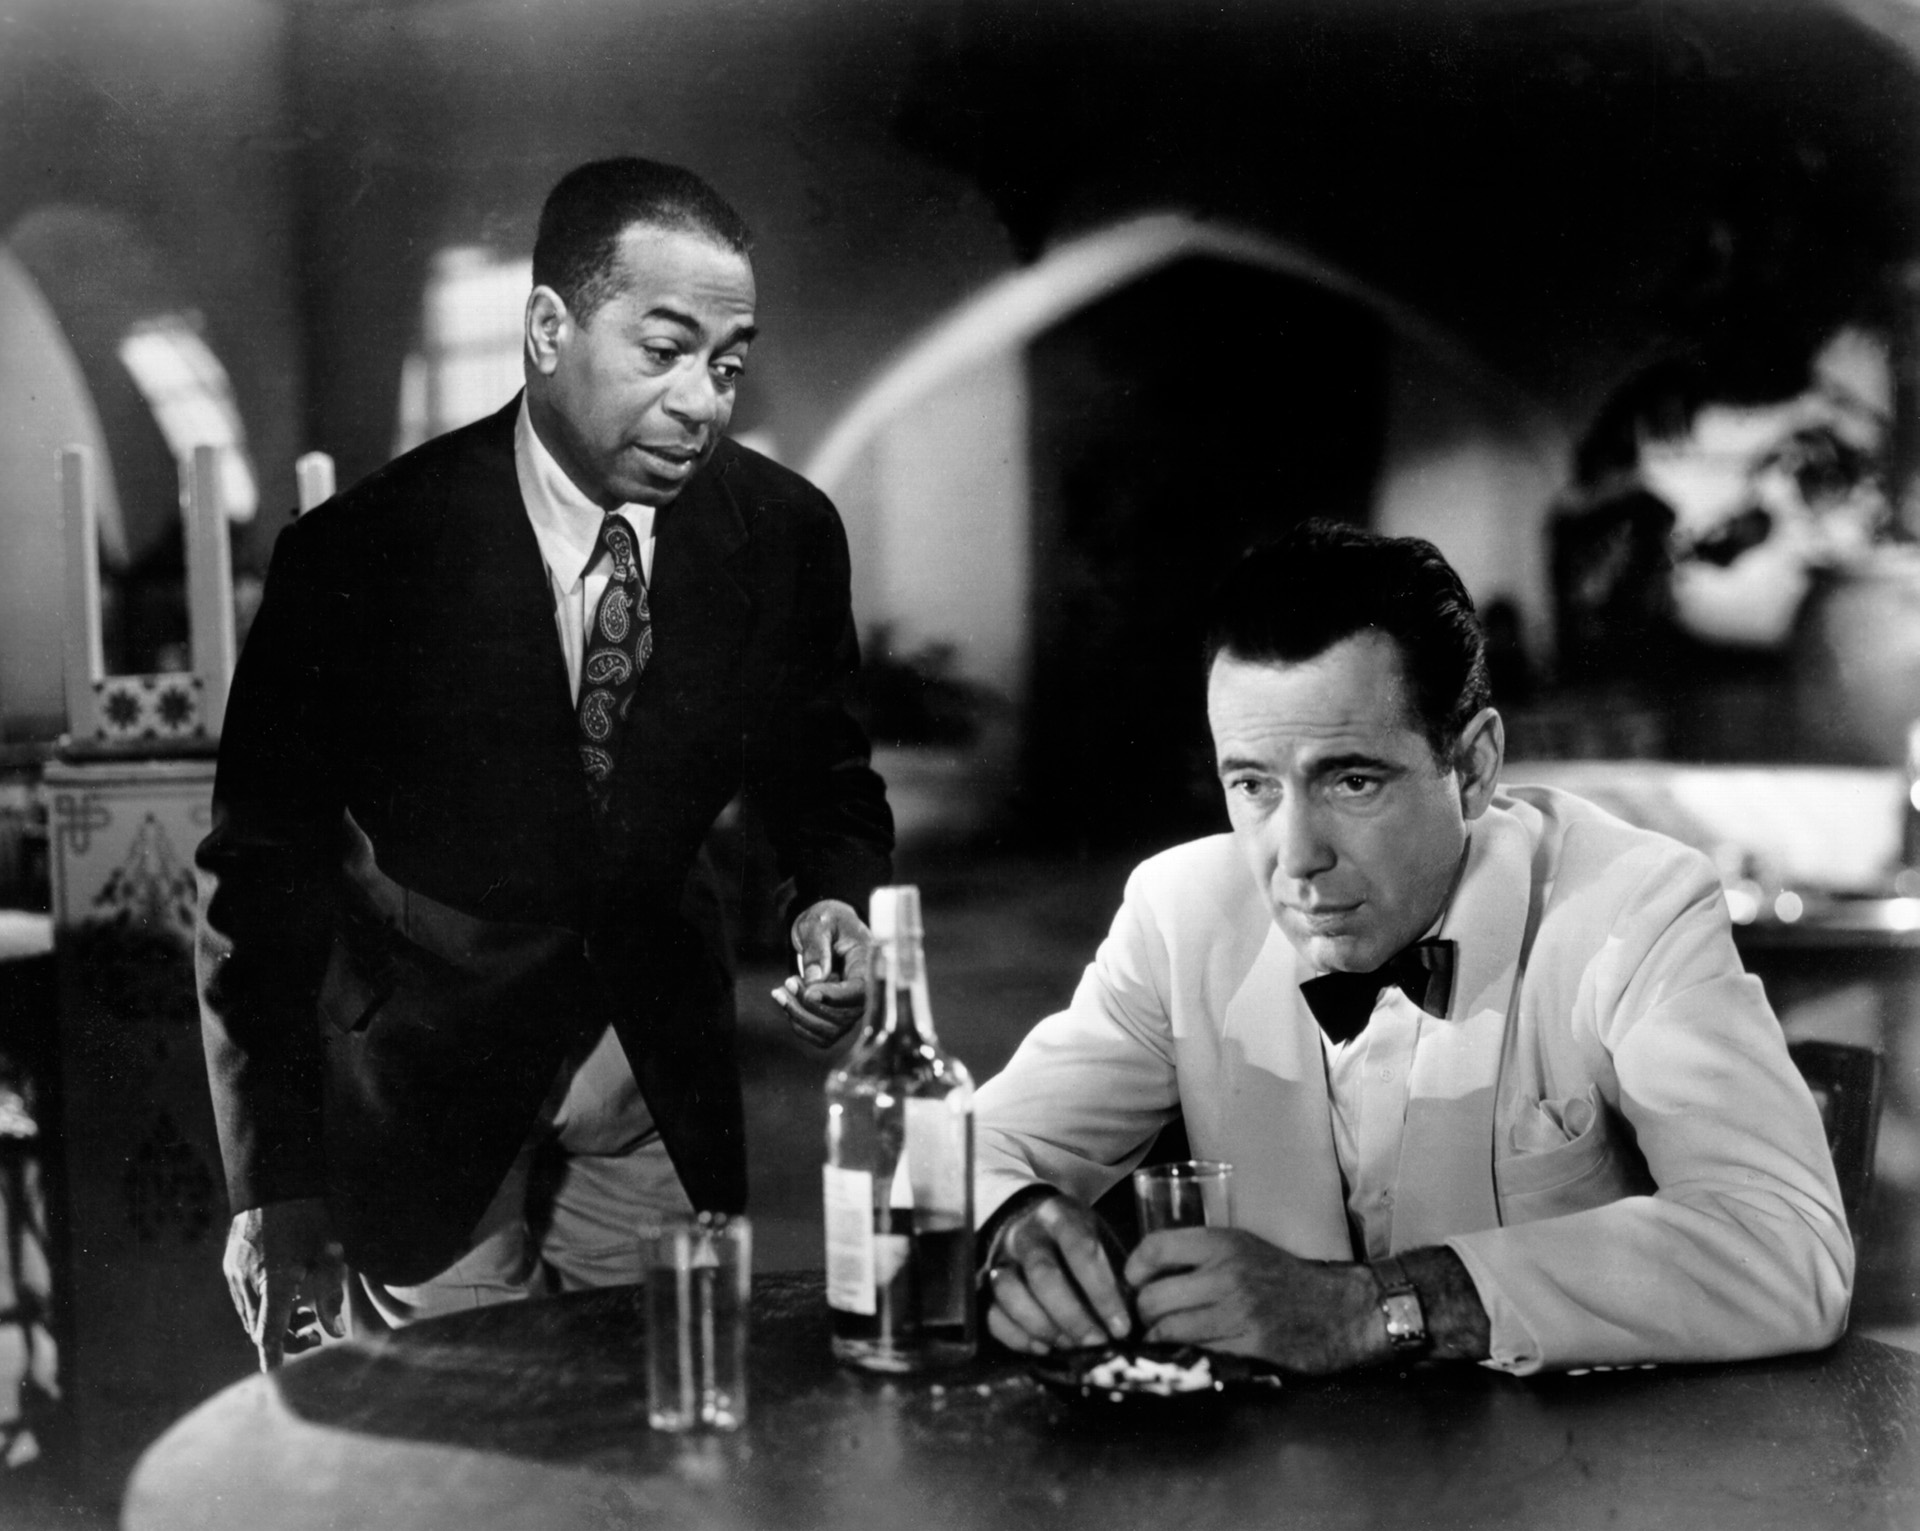 Casablanca cumple 80 años. Una película en la que pocos confiaban, que tuvo muchos inconvenientes durante su rodaje pero que se convirtió en un clásico inoxidable.